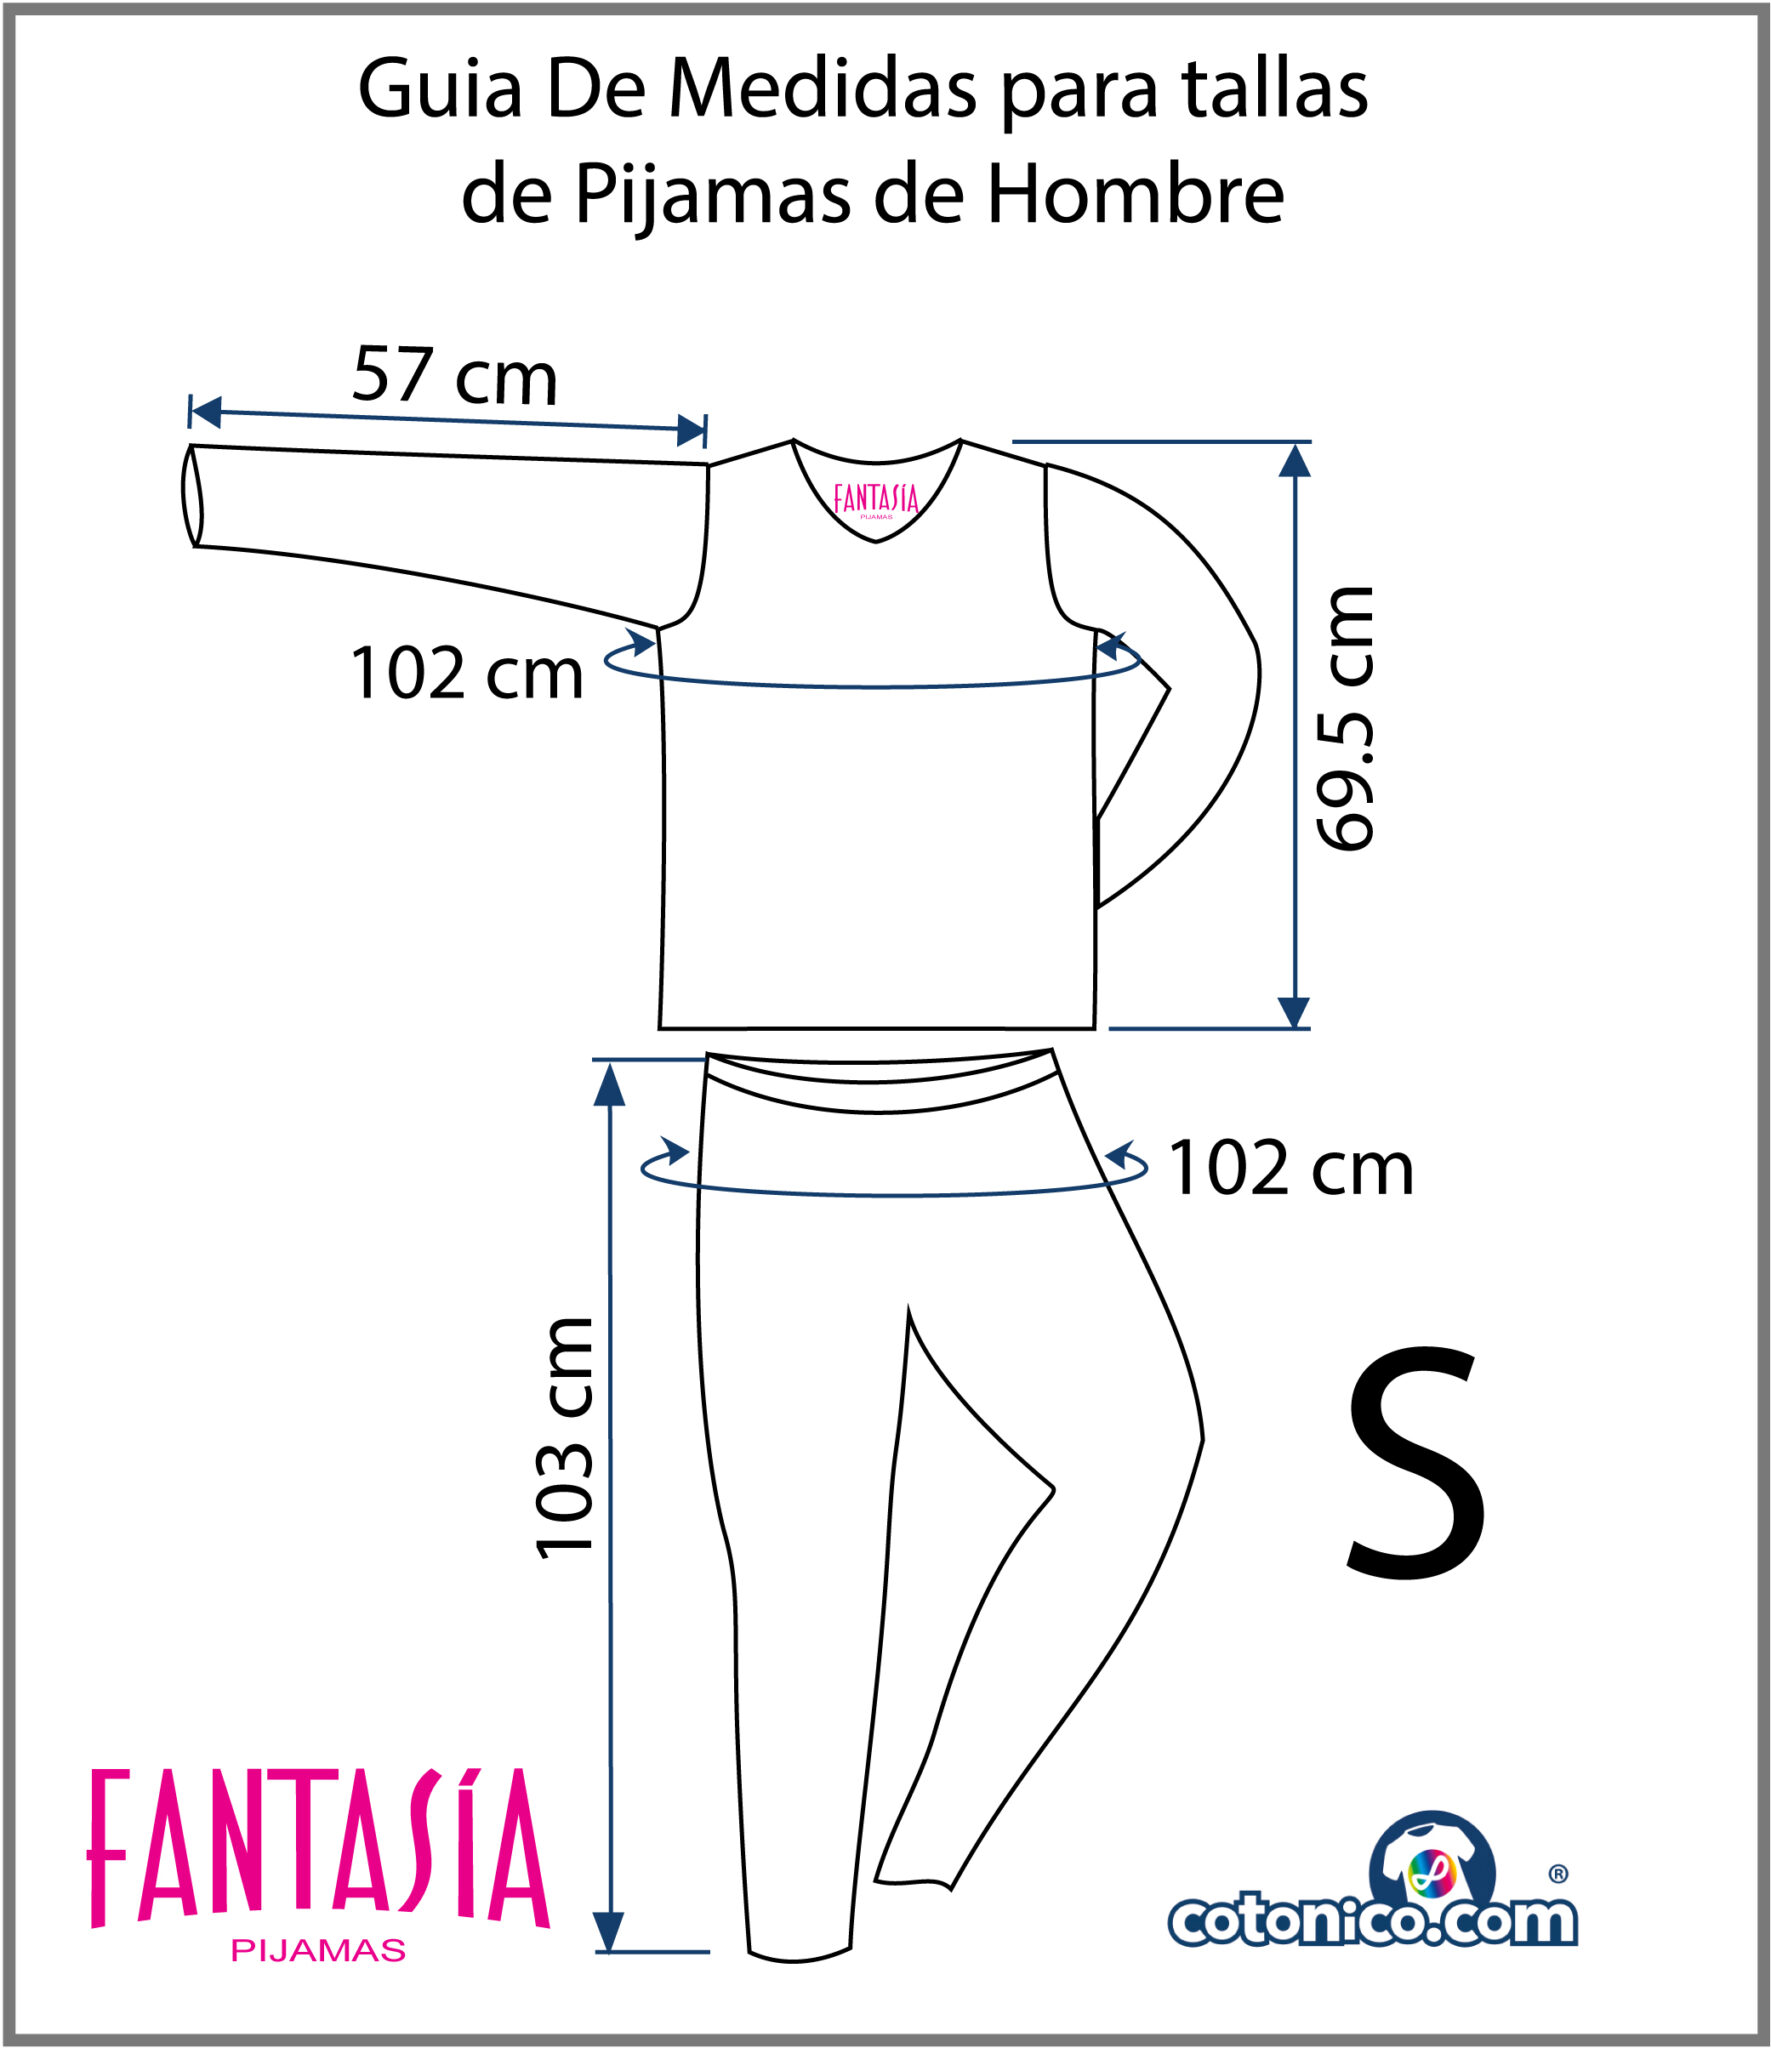 Guia-De-Tallas-Pijamas-De-Hombre-S